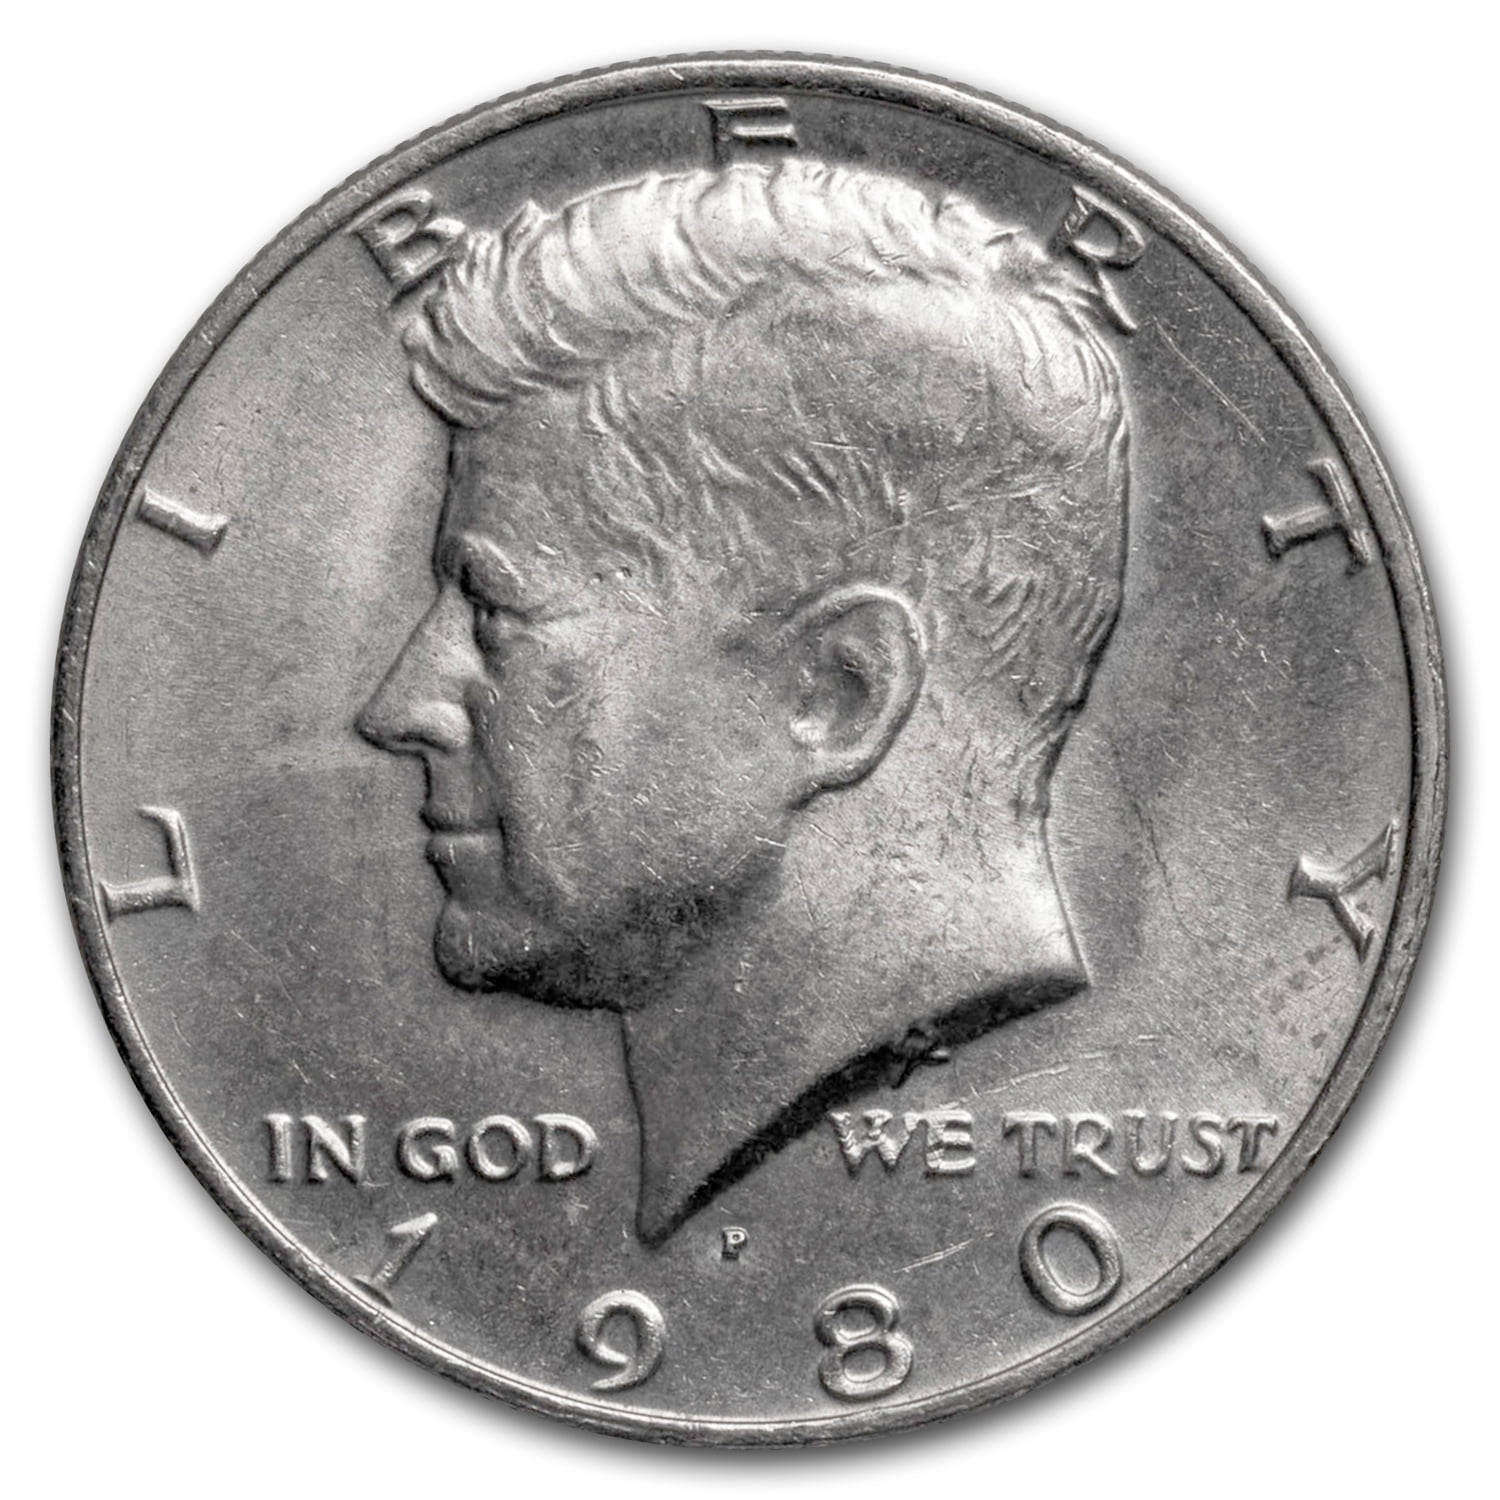 BU Brilliant Uncirculated 1 Roll 1980 D JFK Kennedy Half Dollars 20 coins 